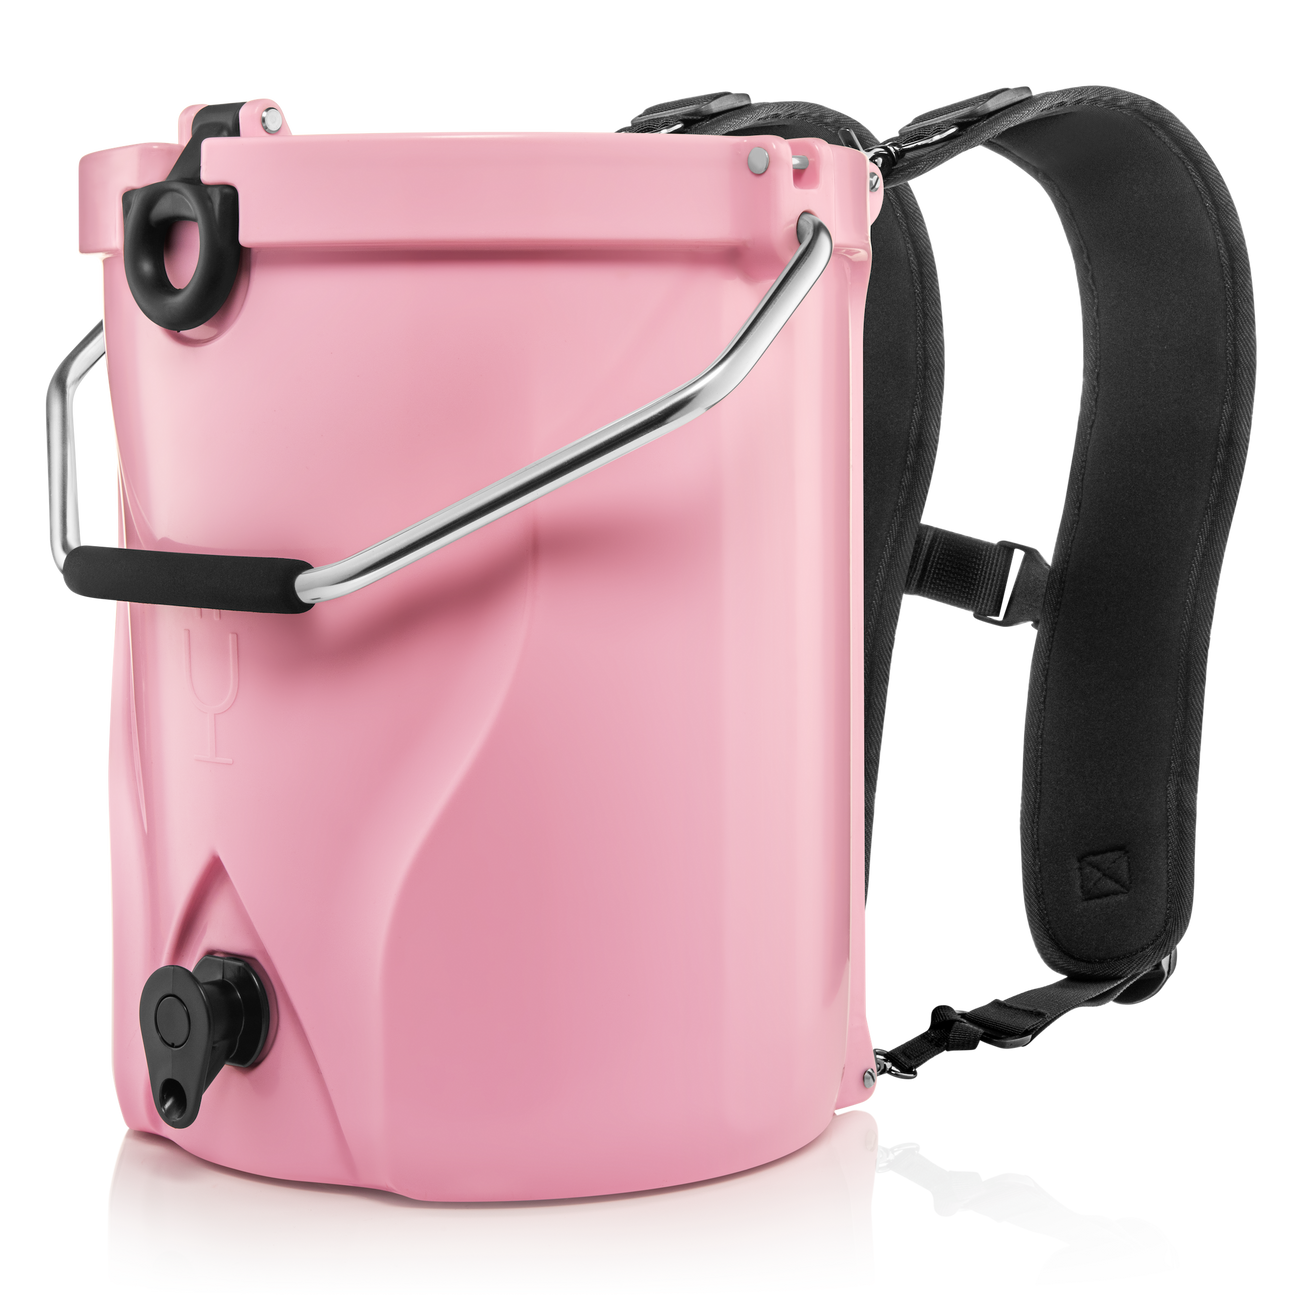 Brümate: BackTap Backpack Cooler